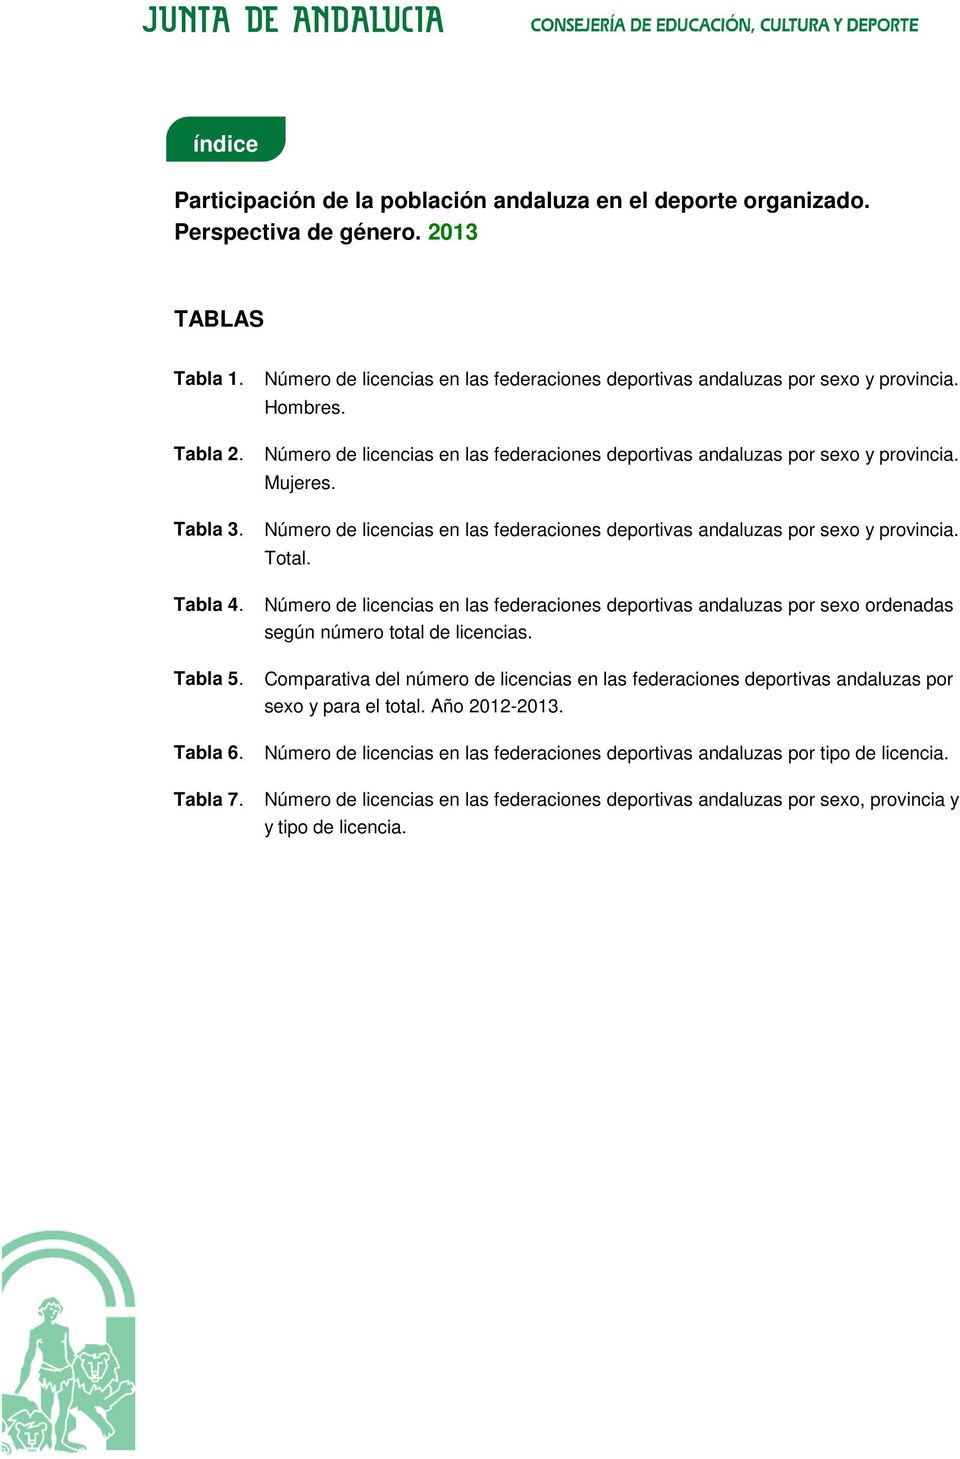 Número de licencias en las federaciones deportivas andaluzas por sexo y provincia. Total.